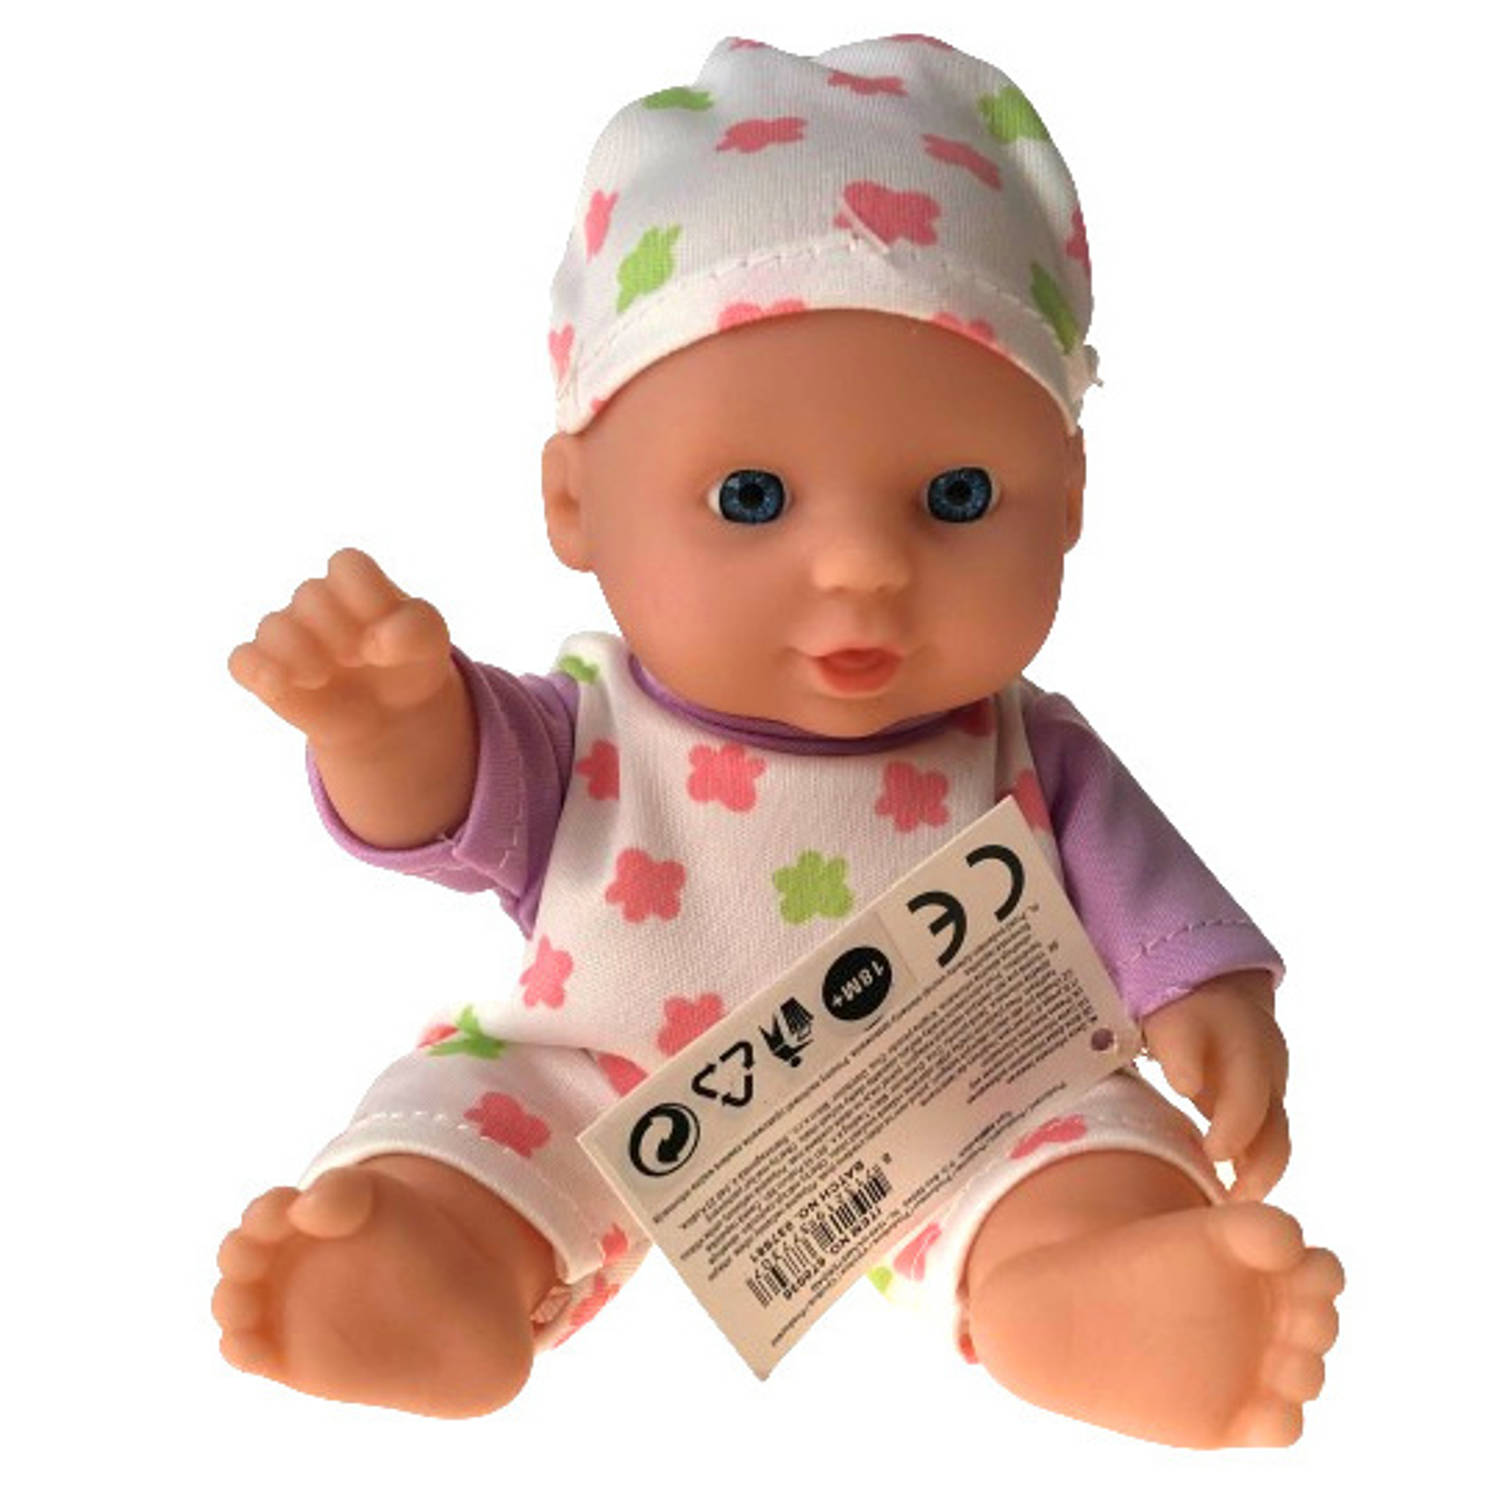 Merkloos Toys Amsterdam Babypop Meisjes 20 Cm Rubber Wit/paars 3 delig online kopen